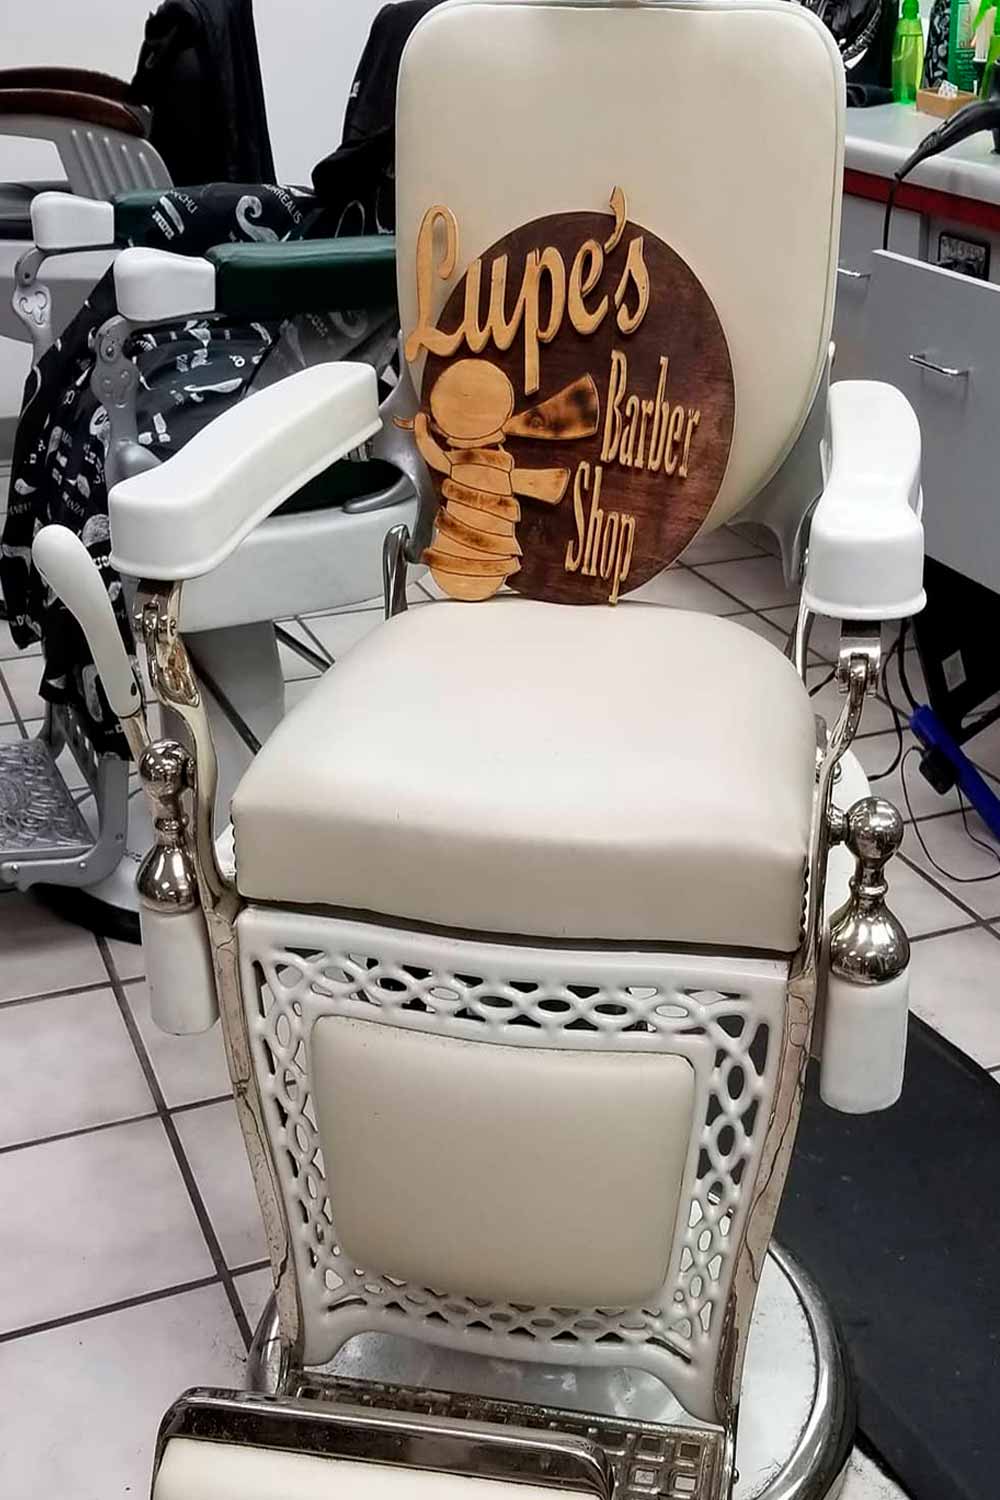 Lupe Barber Shop 4